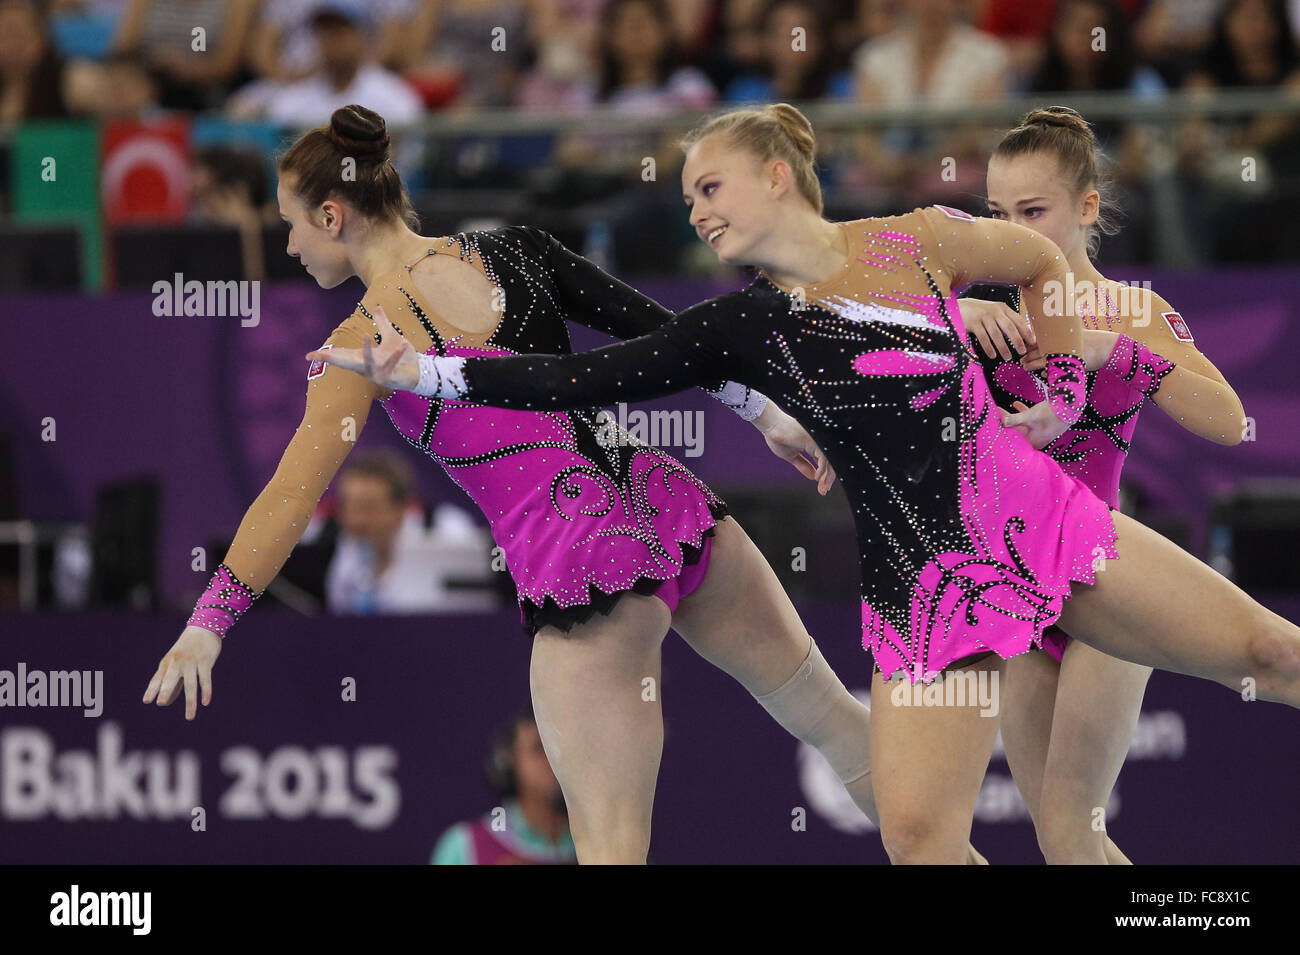 Poland. Women's Group All-Around Acrobatic Gymnastics. National Gymnastics Arena. Baku2015. 1st European Games. Baku. Azerbaijan. 19/06/2015. Stock Photo